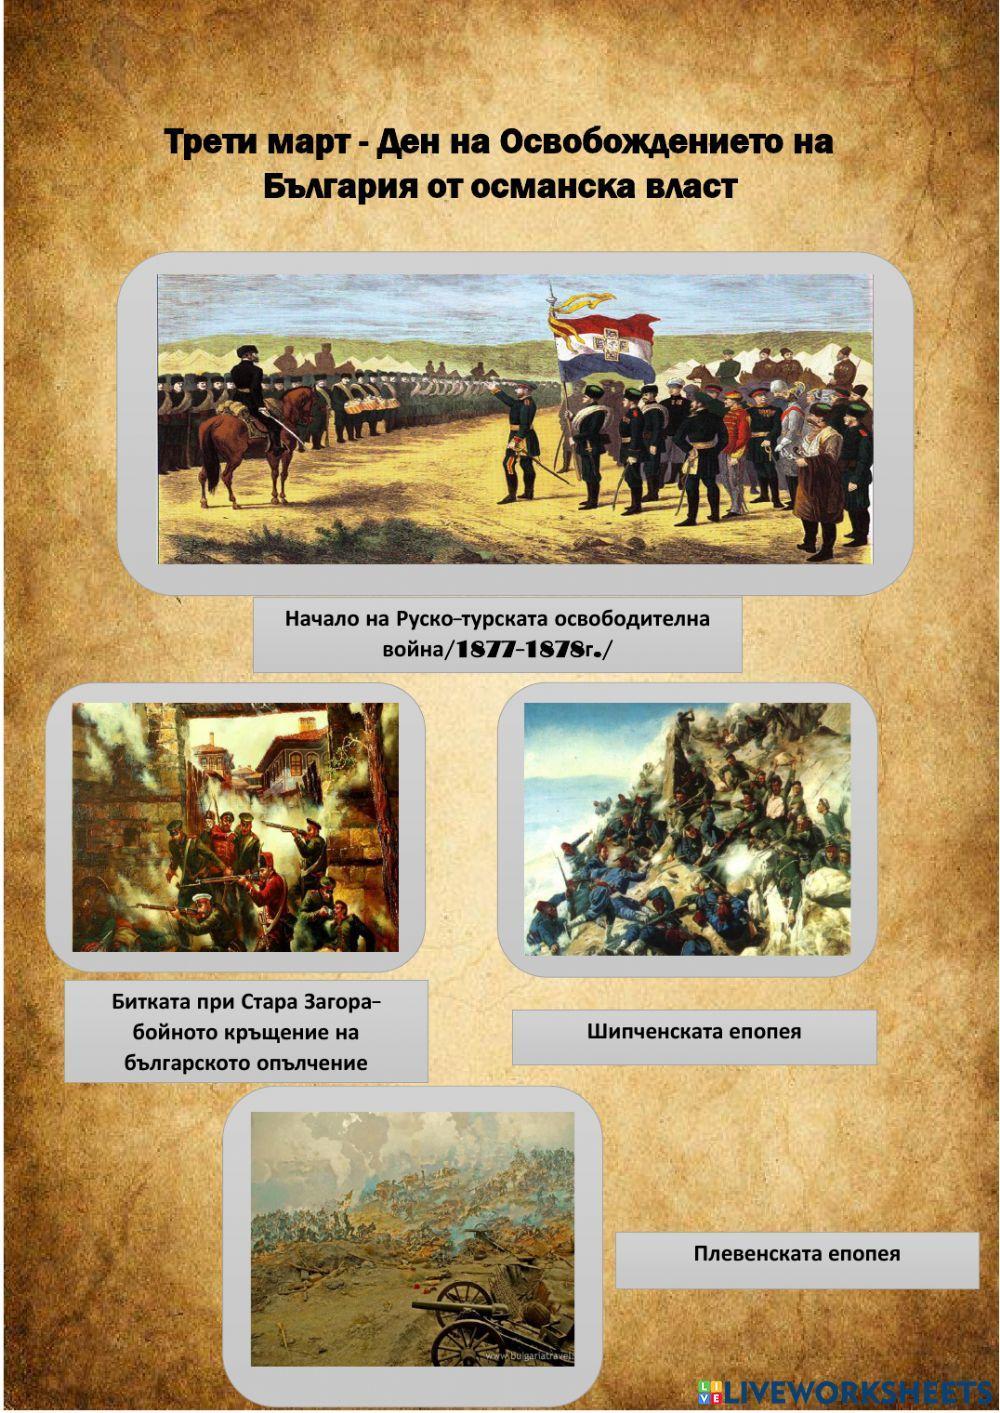 Трети март-Ден на Освобождението на България от османска власт